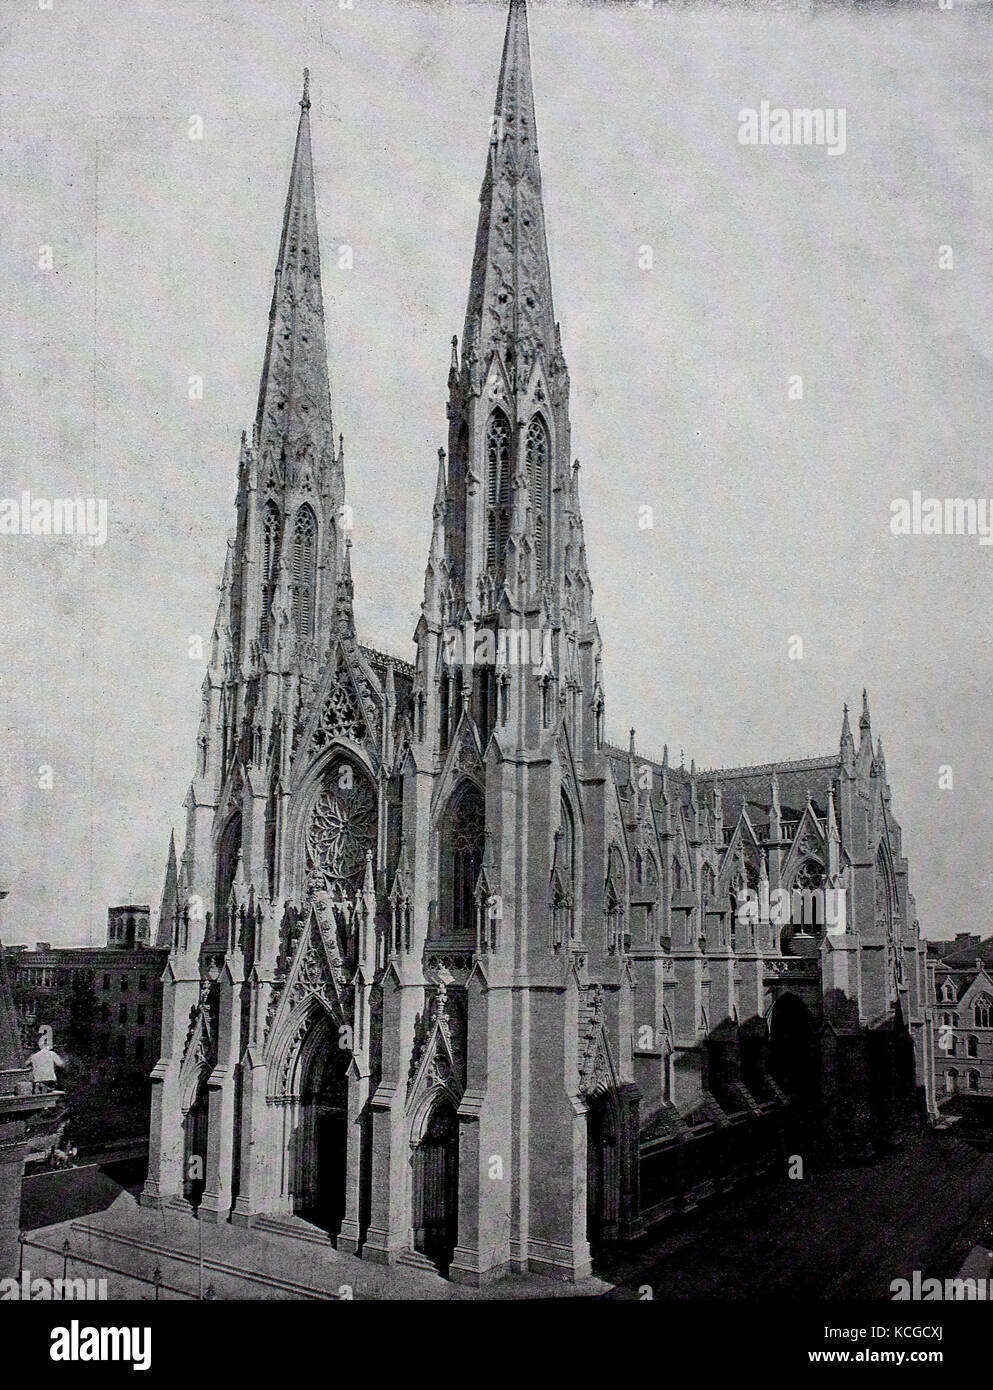 Vereinigte Staaten von Amerika, der Saint Patrick's Cathedral an der Fifth Avenue in New York, digital verbesserte Reproduktion einer historischen Foto aus dem (geschätzten) Jahr 1899 Stockfoto